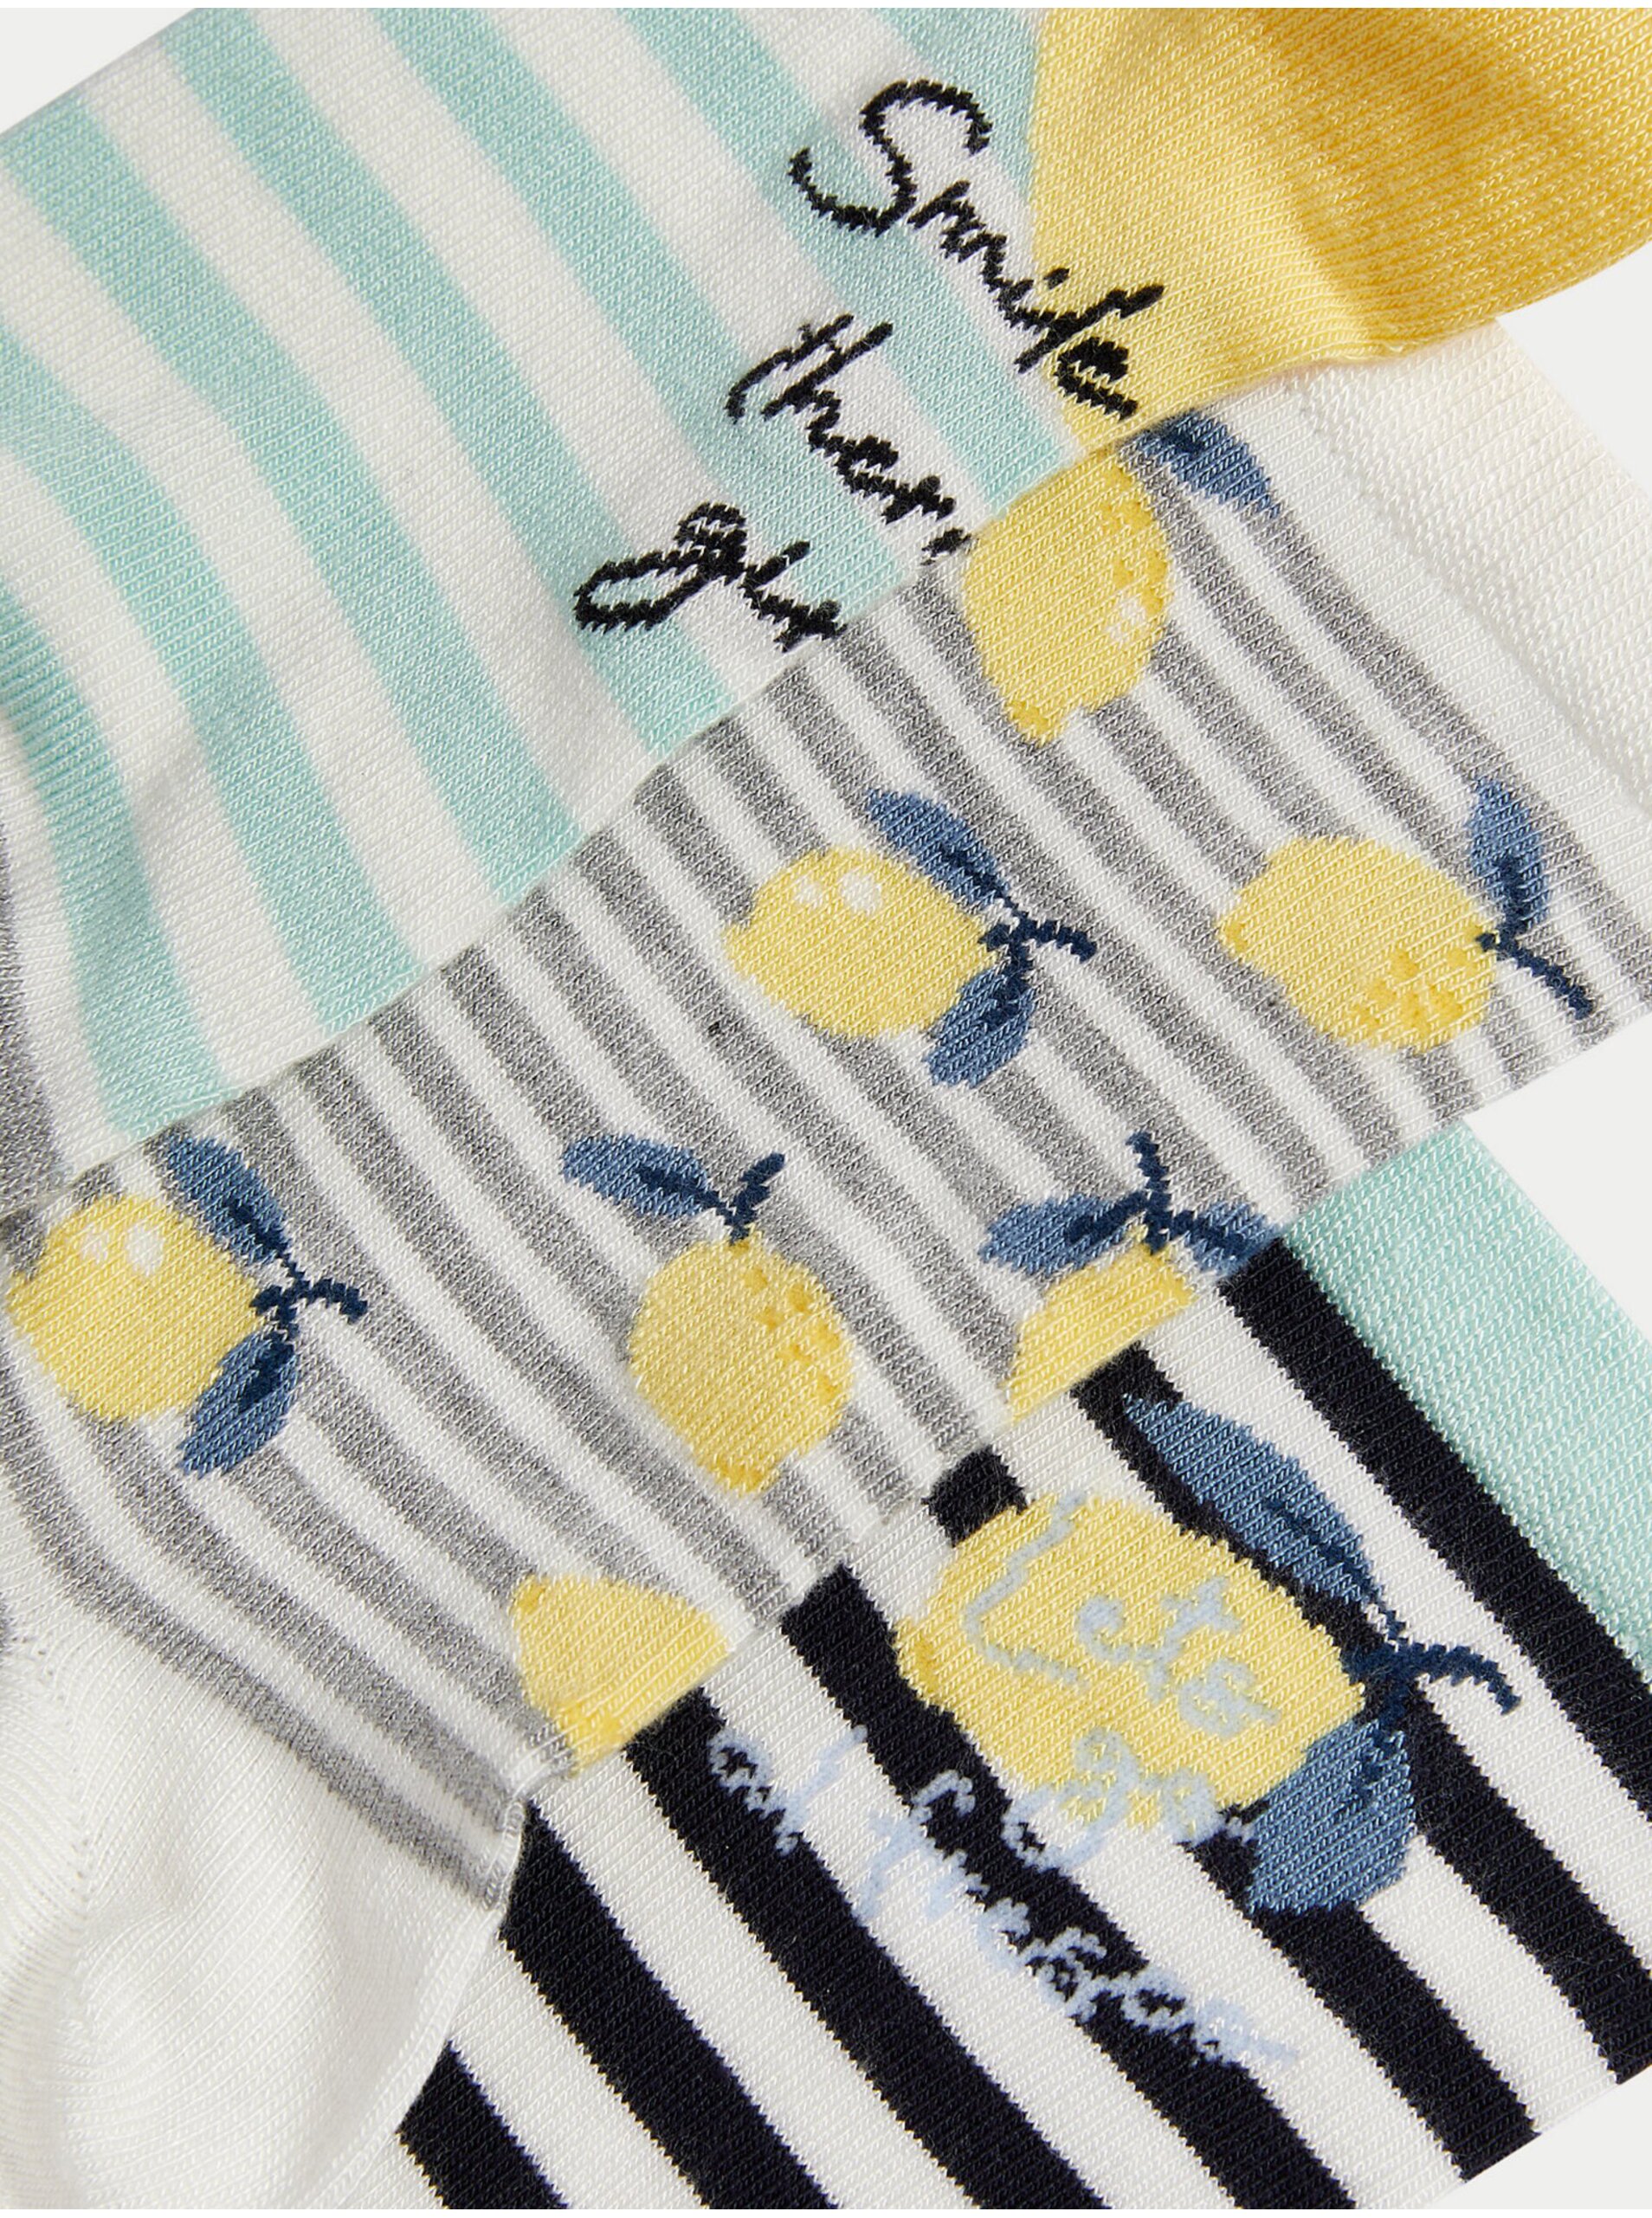 Lacno Súprava troch párov členkových ponožiek Sumptuously Soft™ s motivom citrónov Marks & Spencer